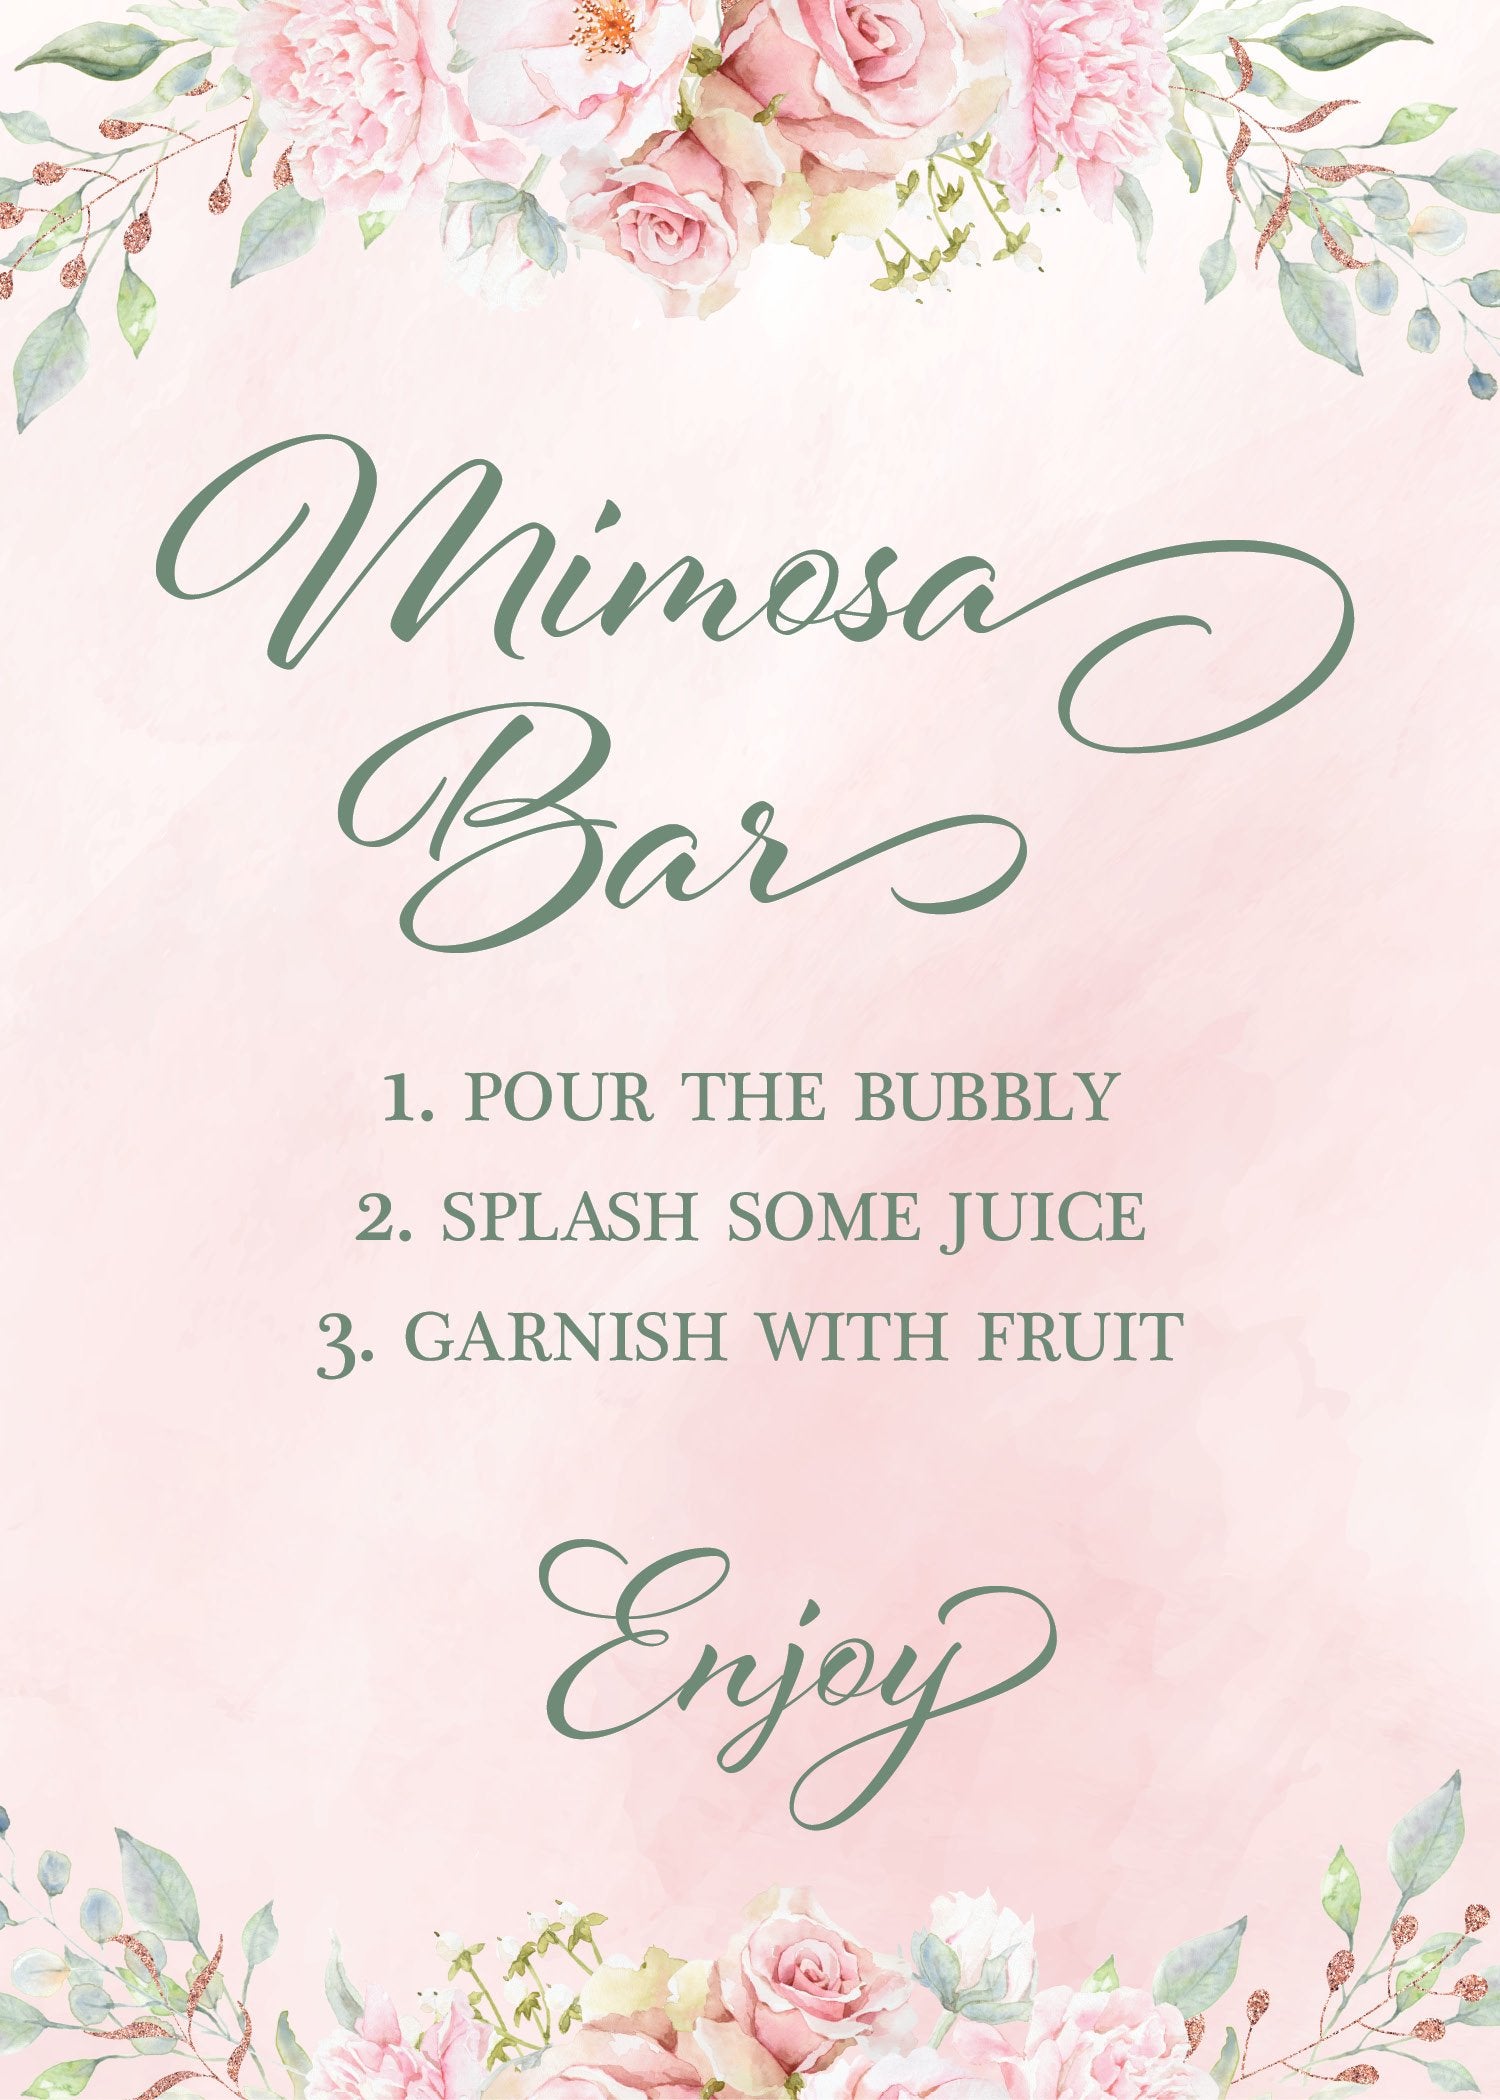 Mimosa Bar Bridal Shower Sign  Printable Mimosa Bridal Shower